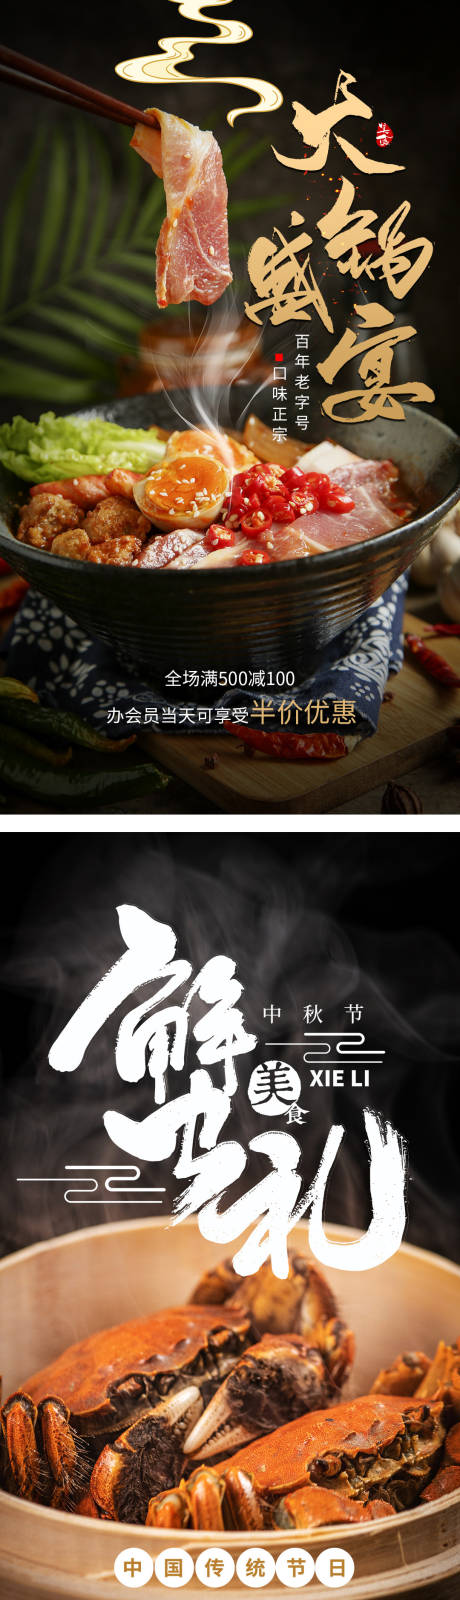 中国美味餐饮美食活动系列海报    